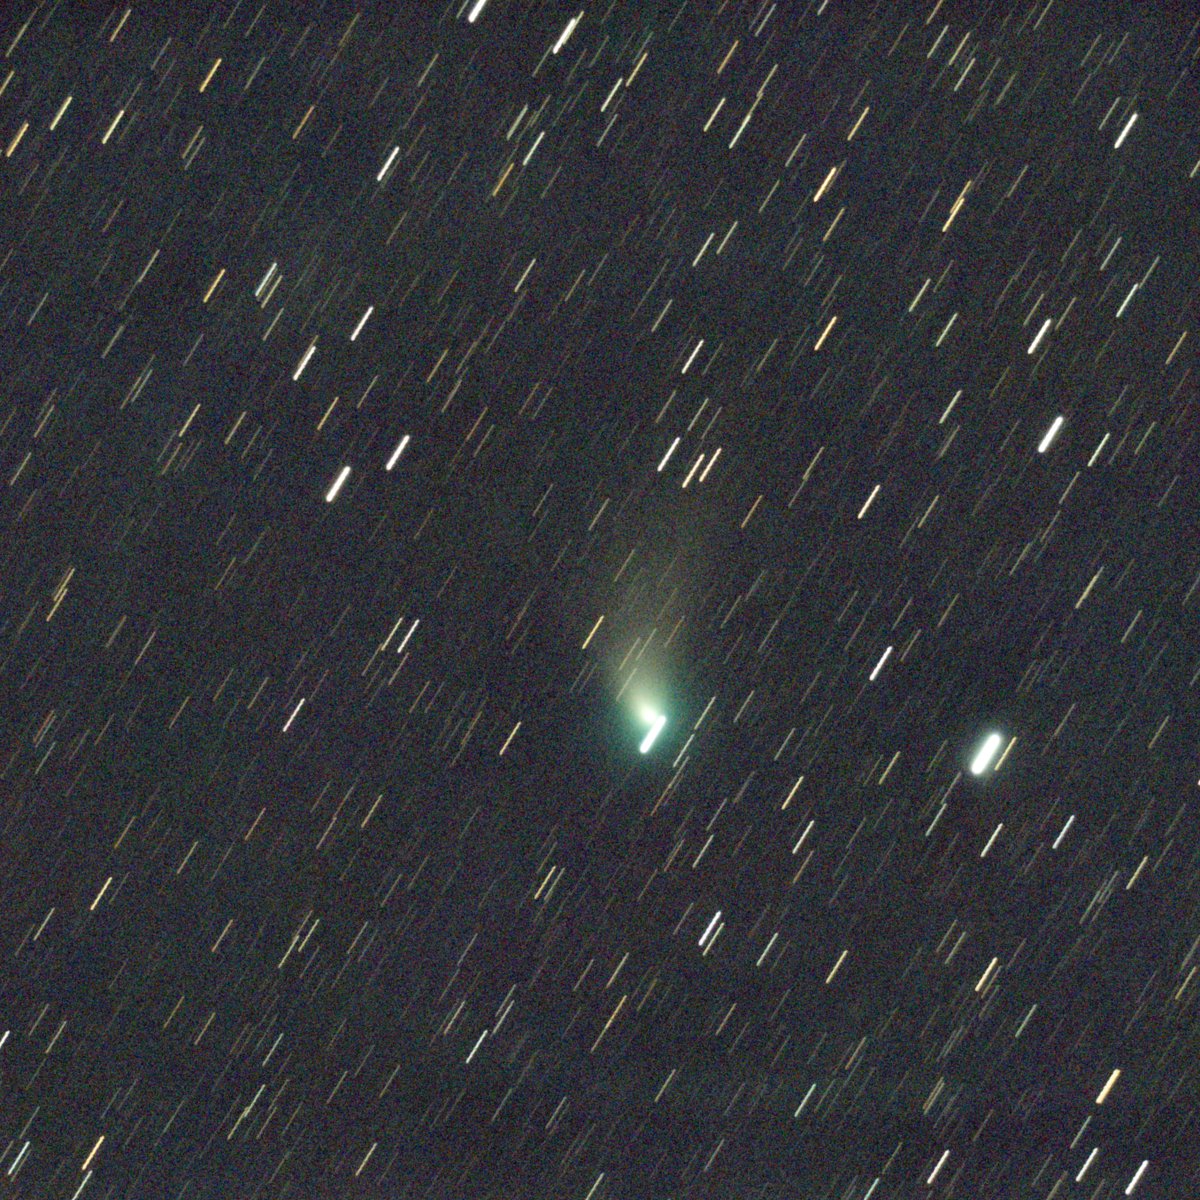 C/2022 E3　ZTF彗星　2023.02.17　20h05m(JST)～  60secx60　FC-50（F5.8）＆SV605CC　DSSで彗星核で合成　GraXpertでBG補正Photoshopでトーン調整　トリミング　透明度が落ちたためか写りが悪い、、　 #2022E3　#cometZTF　
#SV605CC